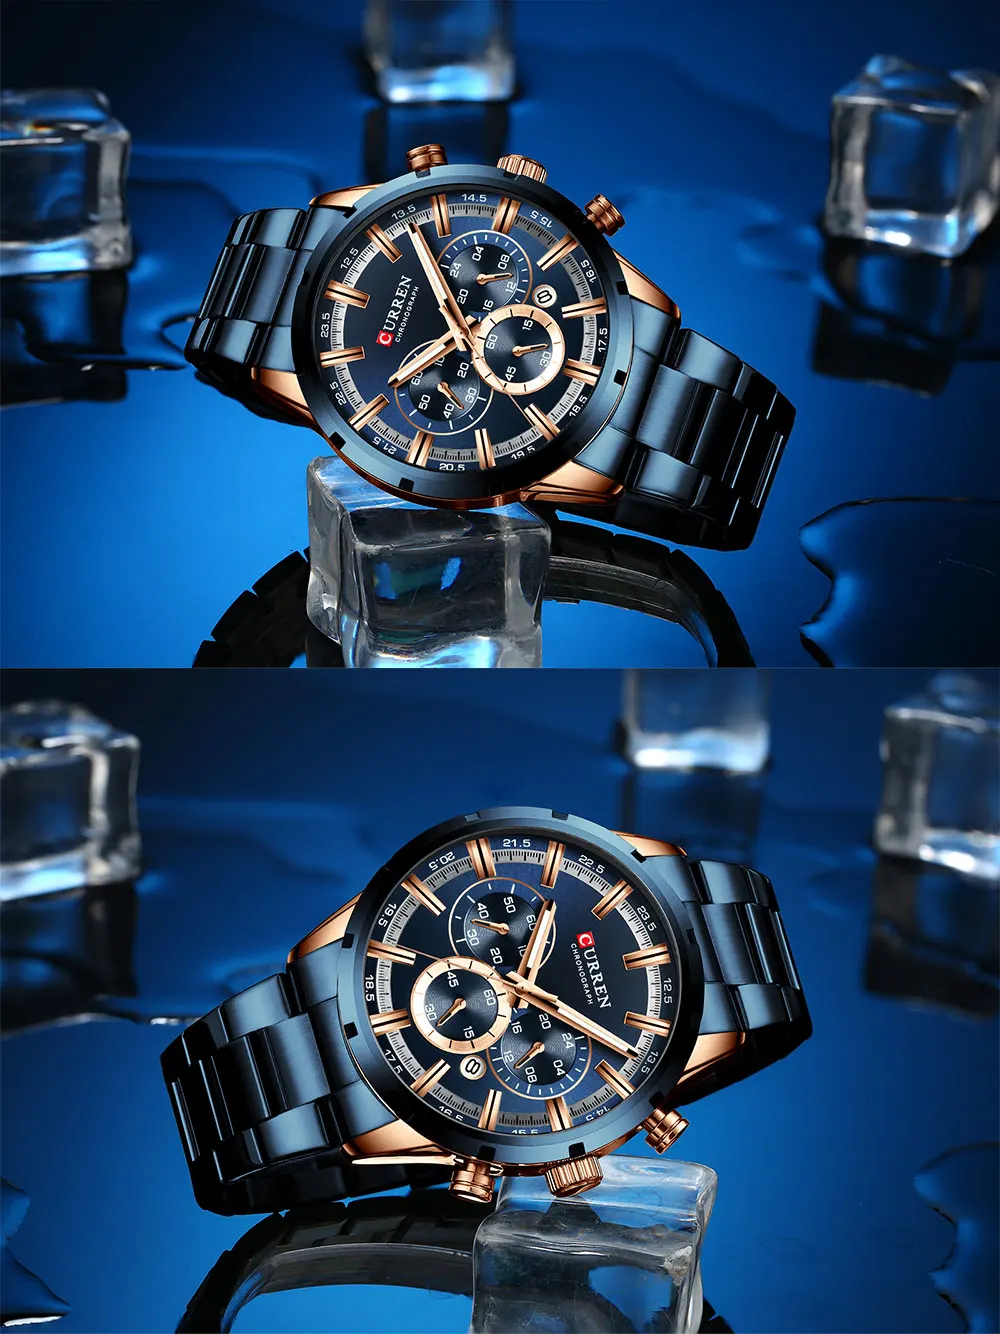 Relogio Masculino CURREN Бизнес Мужской роскошный бренд часов нержавеющая сталь наручные часы хронограф армейские военные кварцевые часы